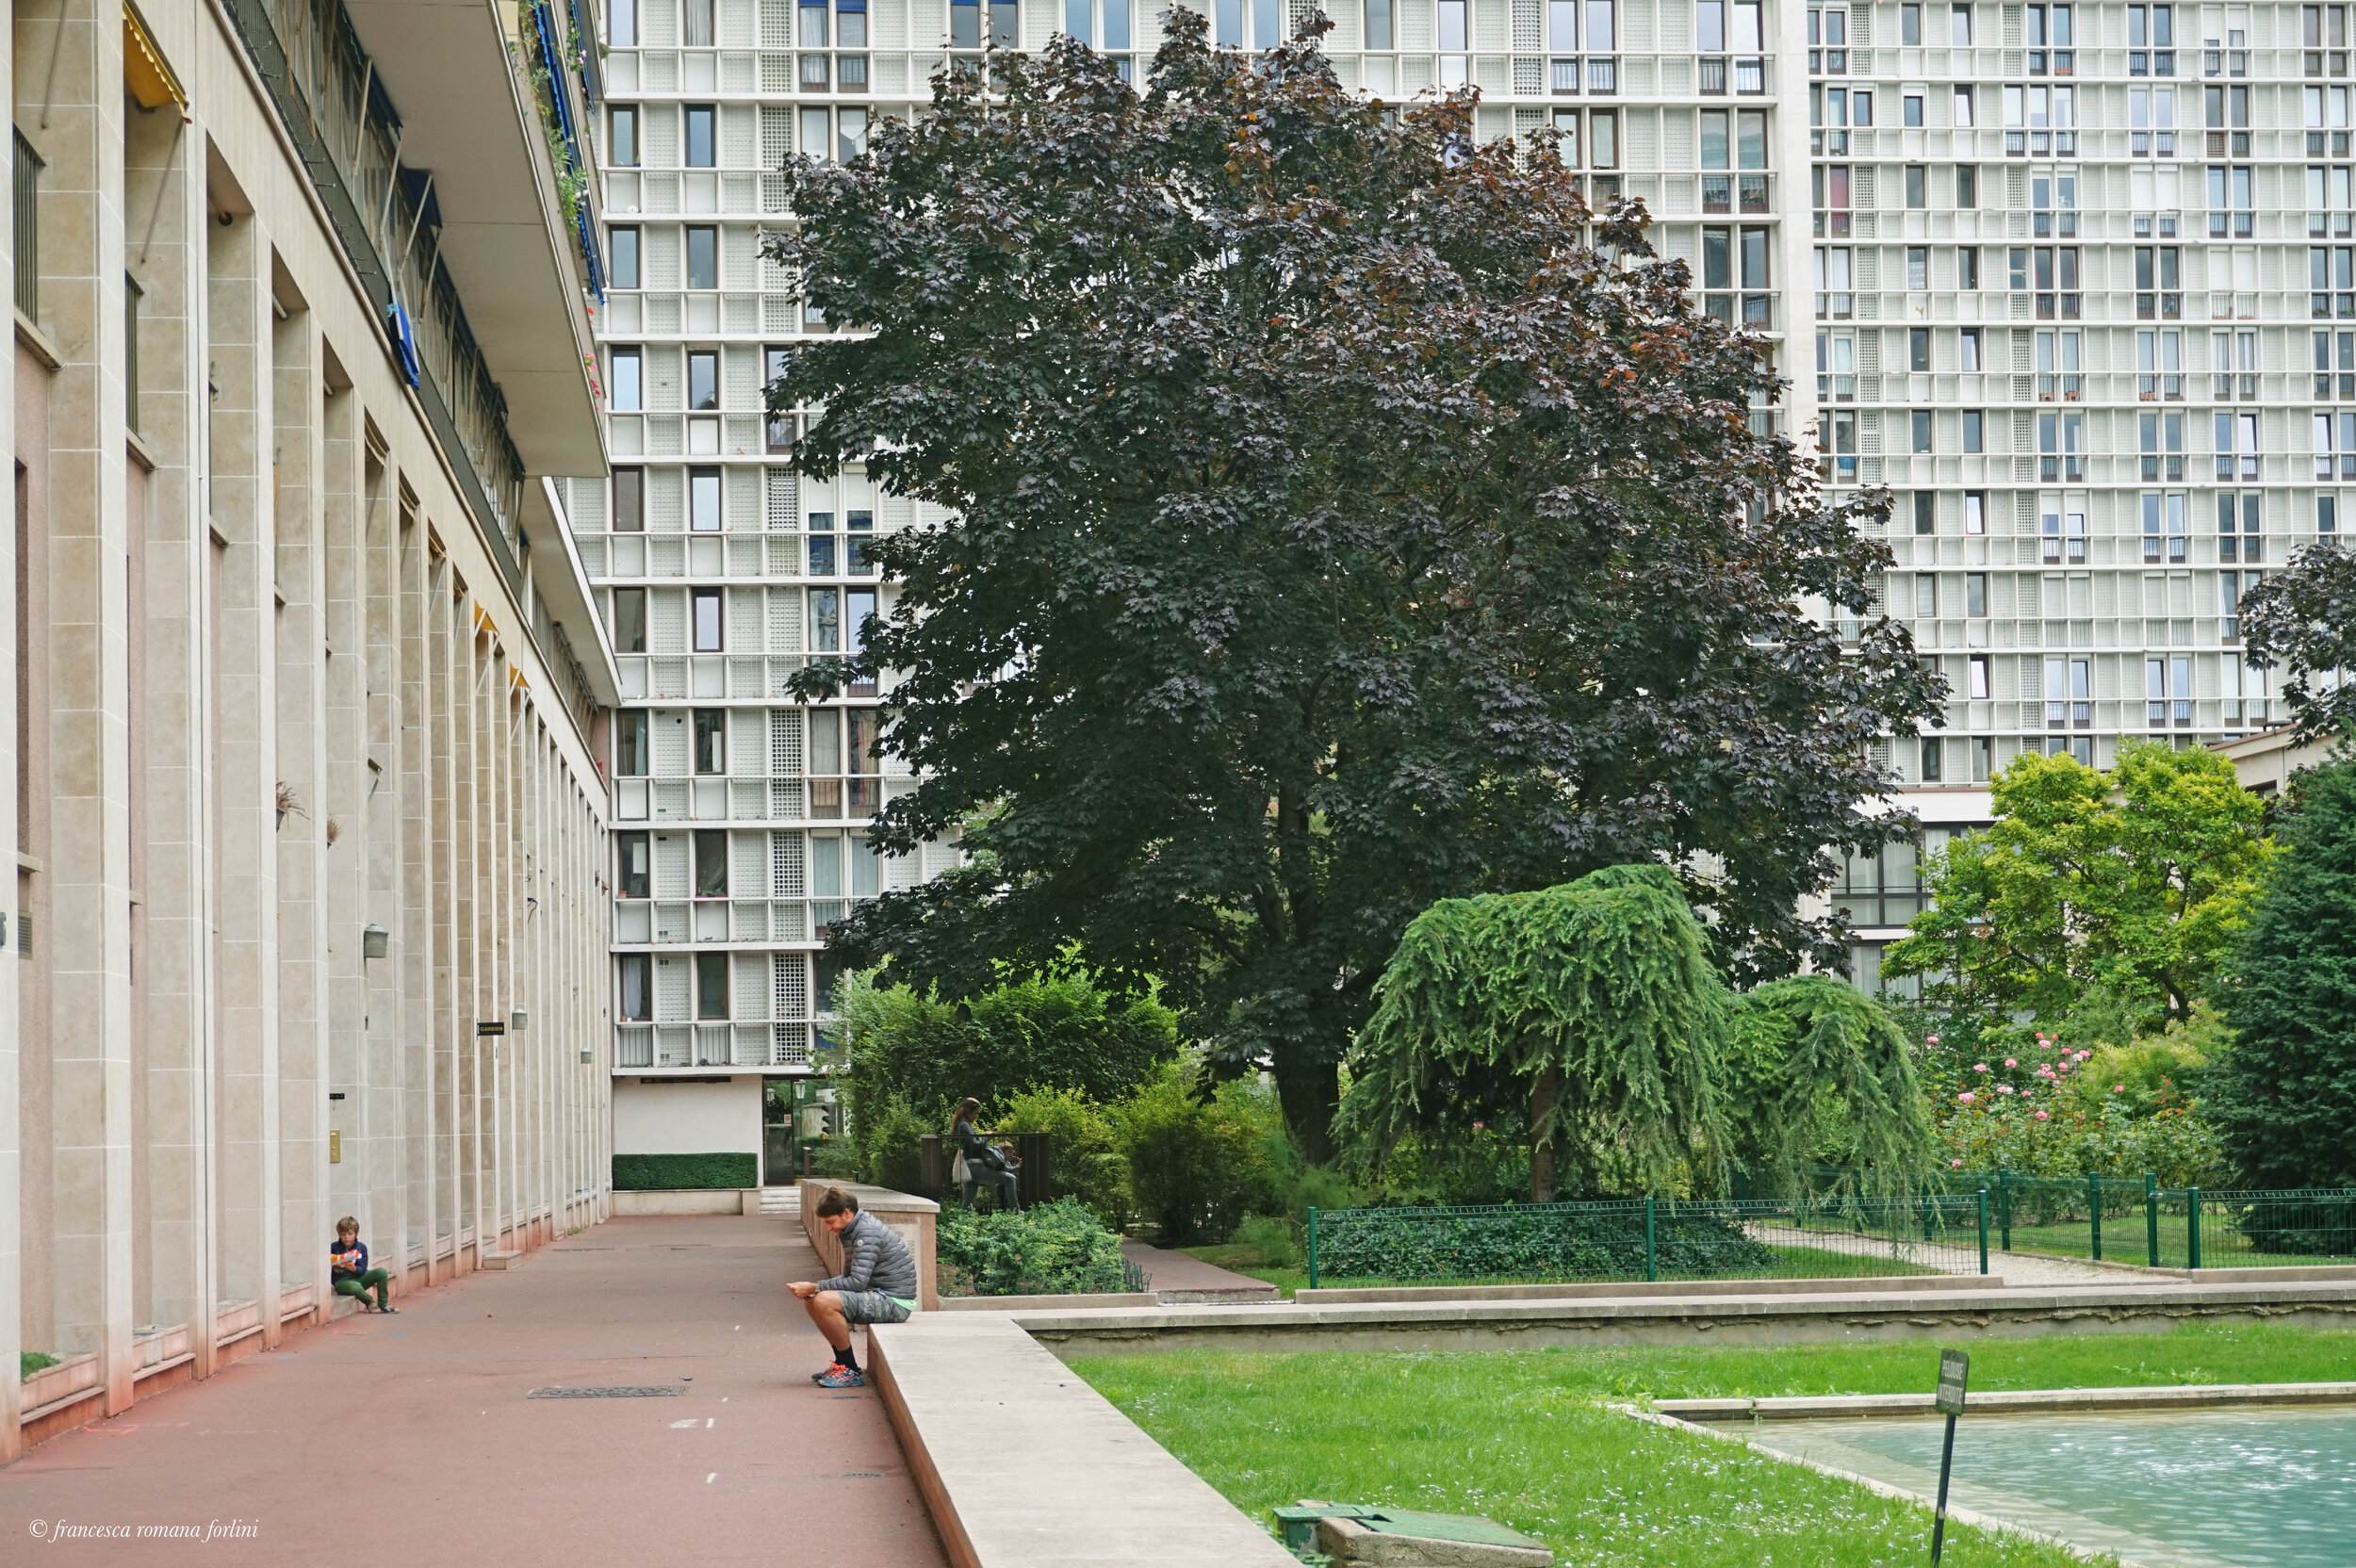  Résidences Salmson at Point-du-Jour, Paris. 2019 